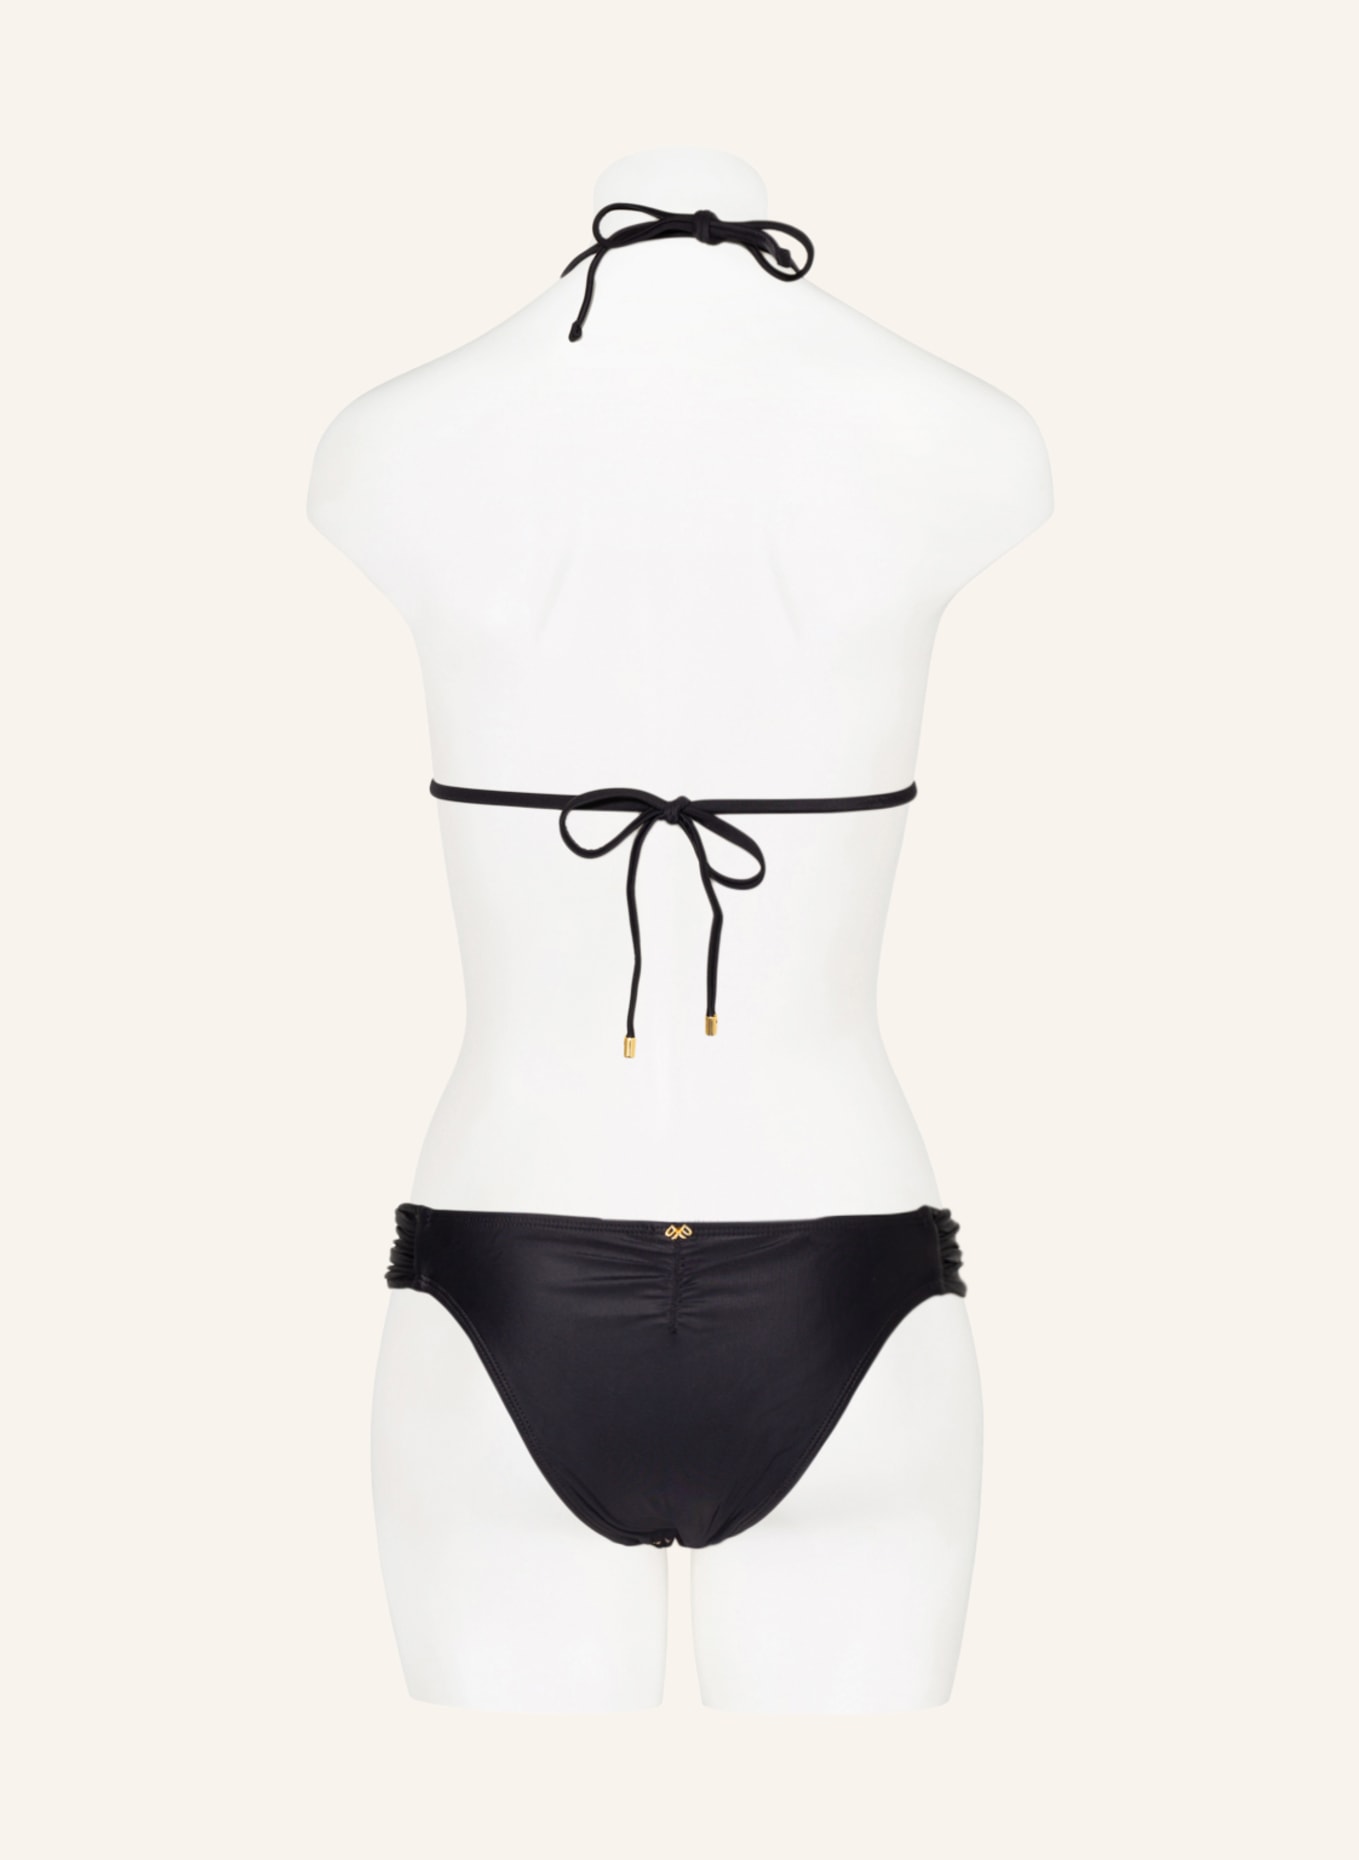 PQ Brazilian bikini bottoms LACE FANNED, Color: BLACK (Image 3)